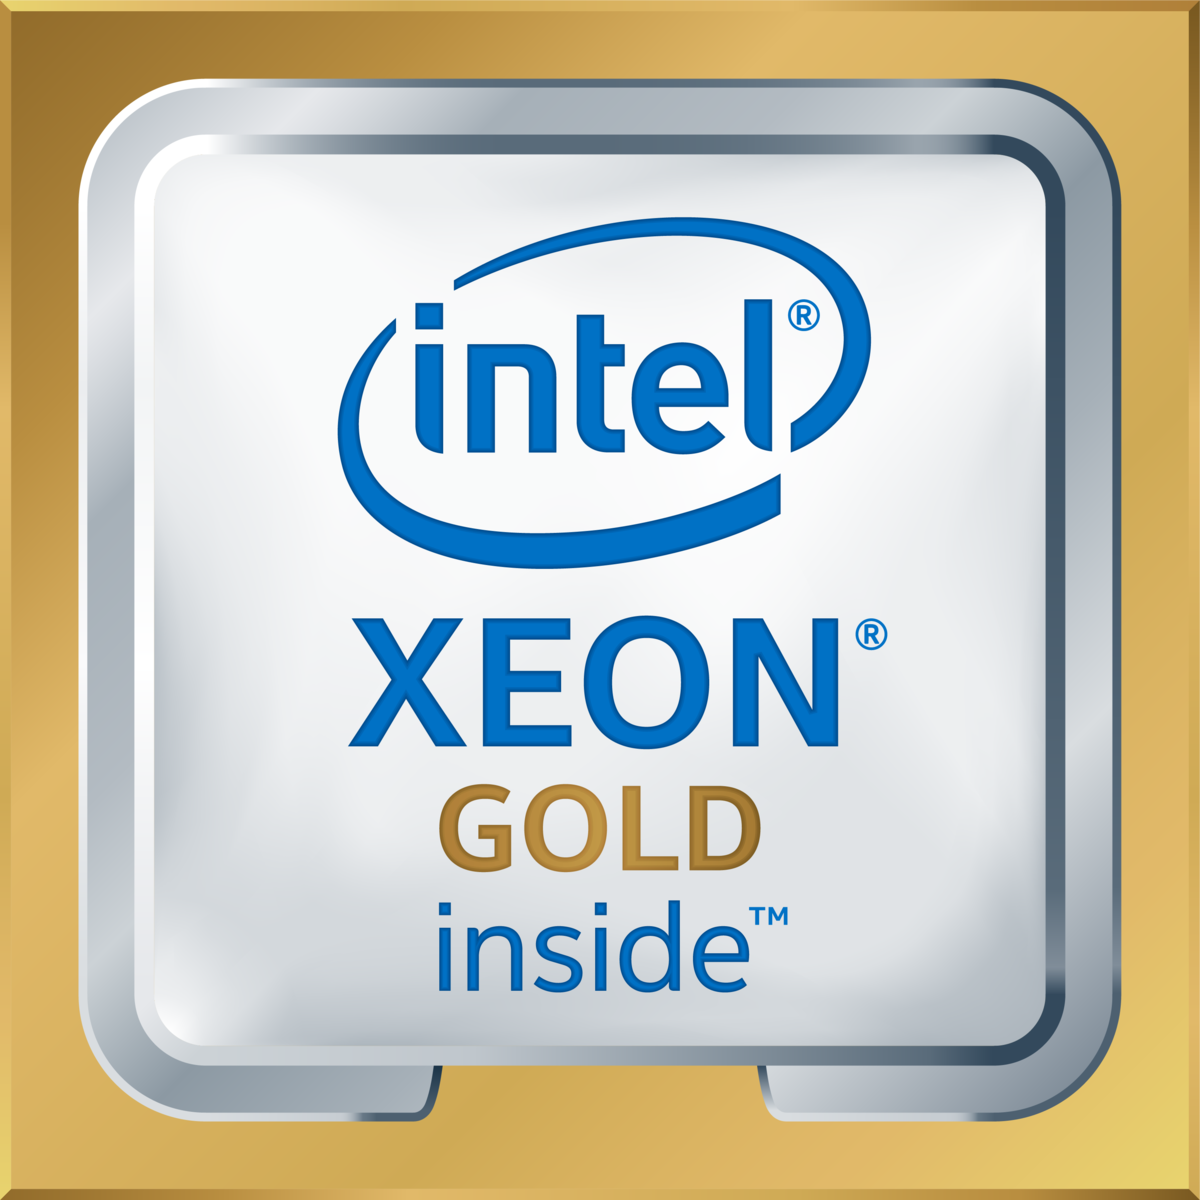 Intel(R) Xeon(R) Gold 6254 CPU @ 3.10GHz's logo